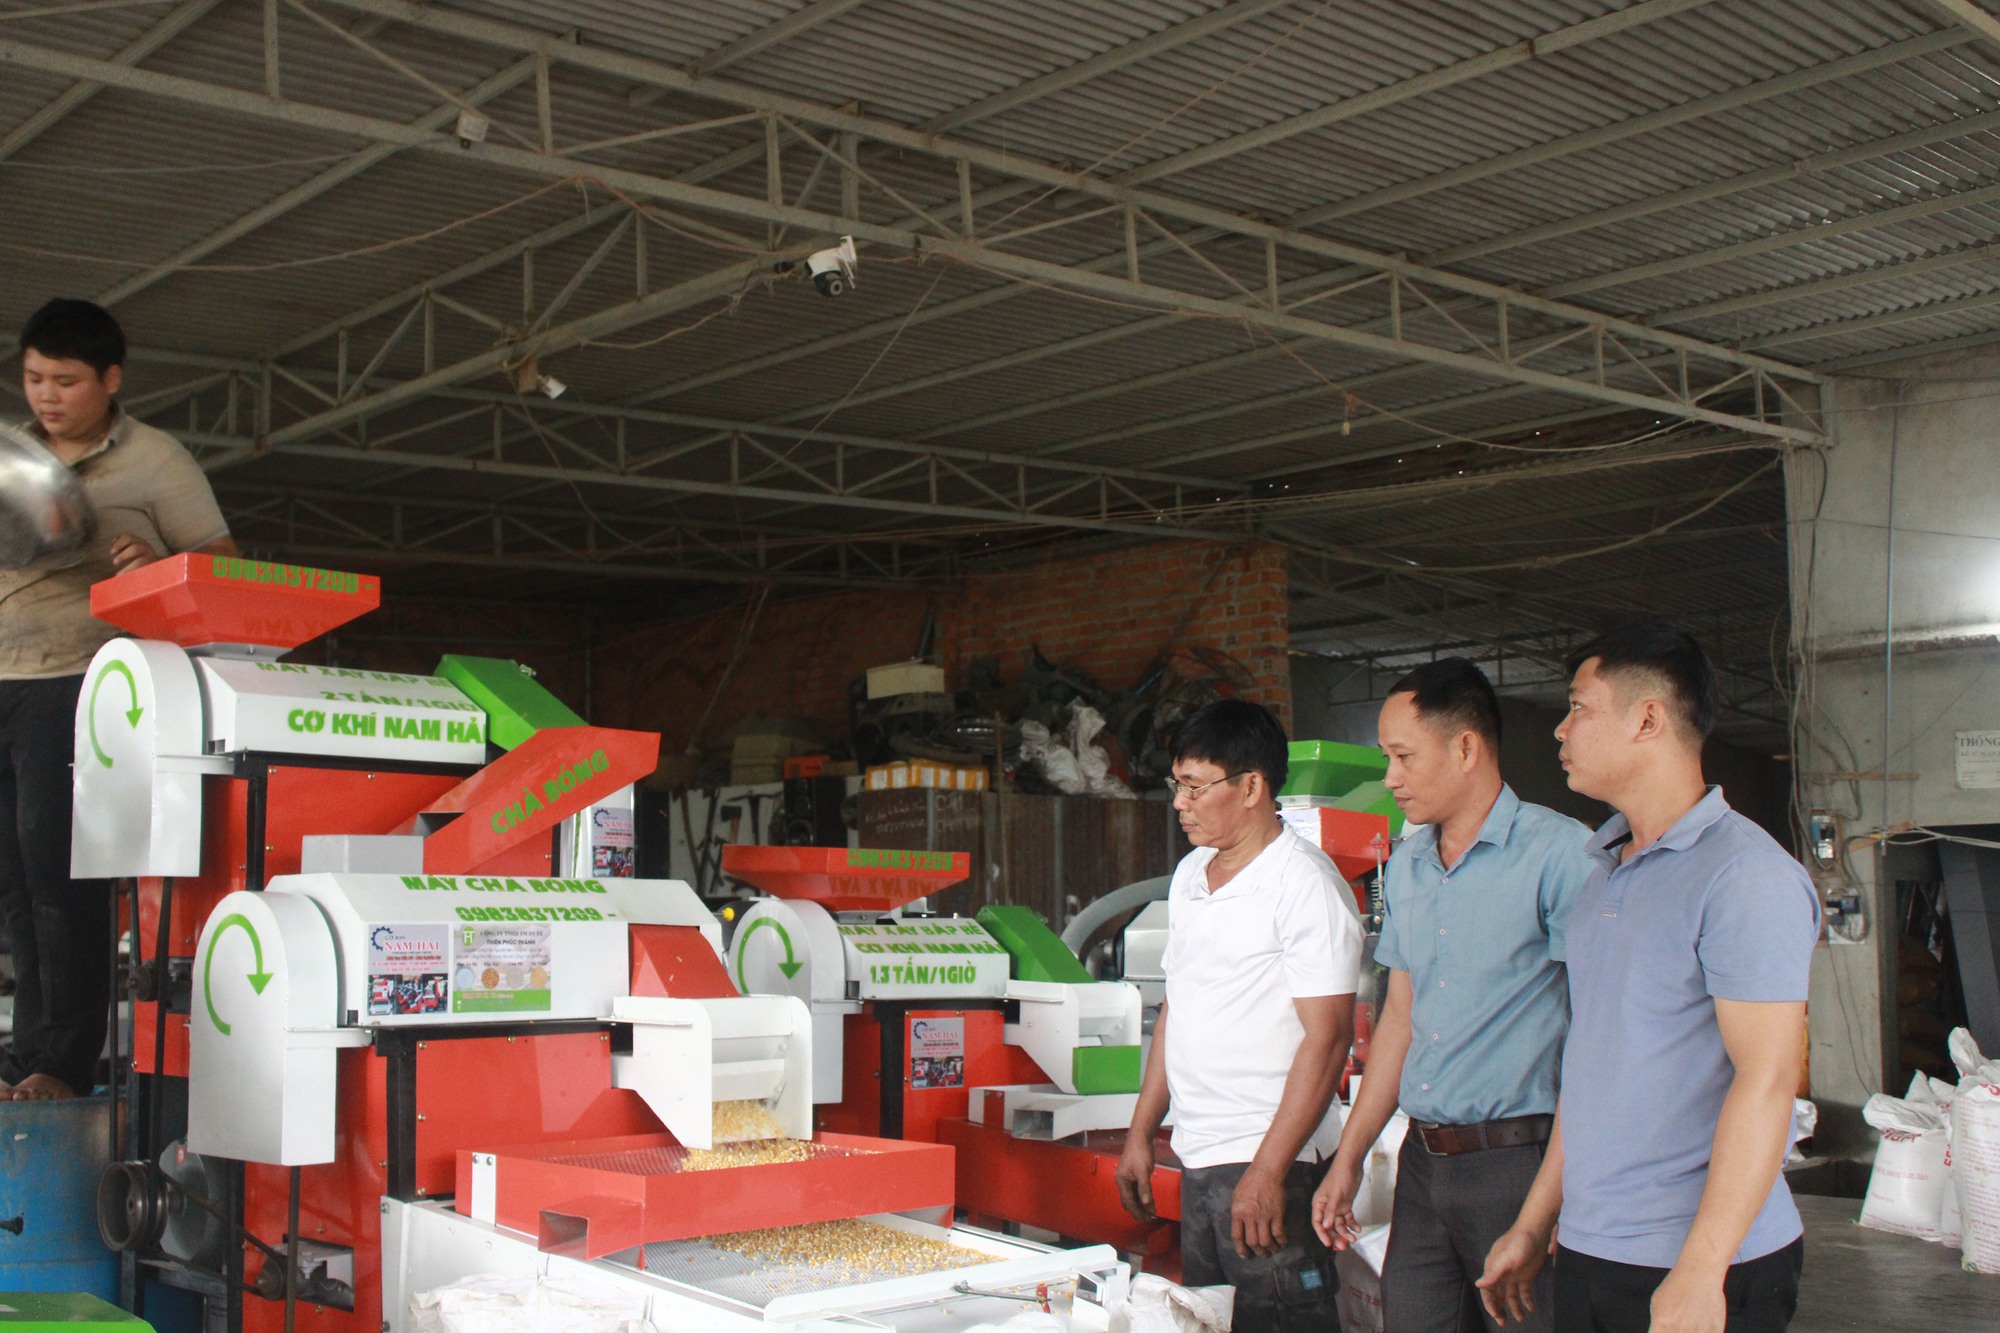 Kỹ sư 9x ở Khánh Hòa nghiên cứu chế tạo thành công máy xay bắp liên hoàn, khách hỏi mua nườm nượp - Ảnh 2.